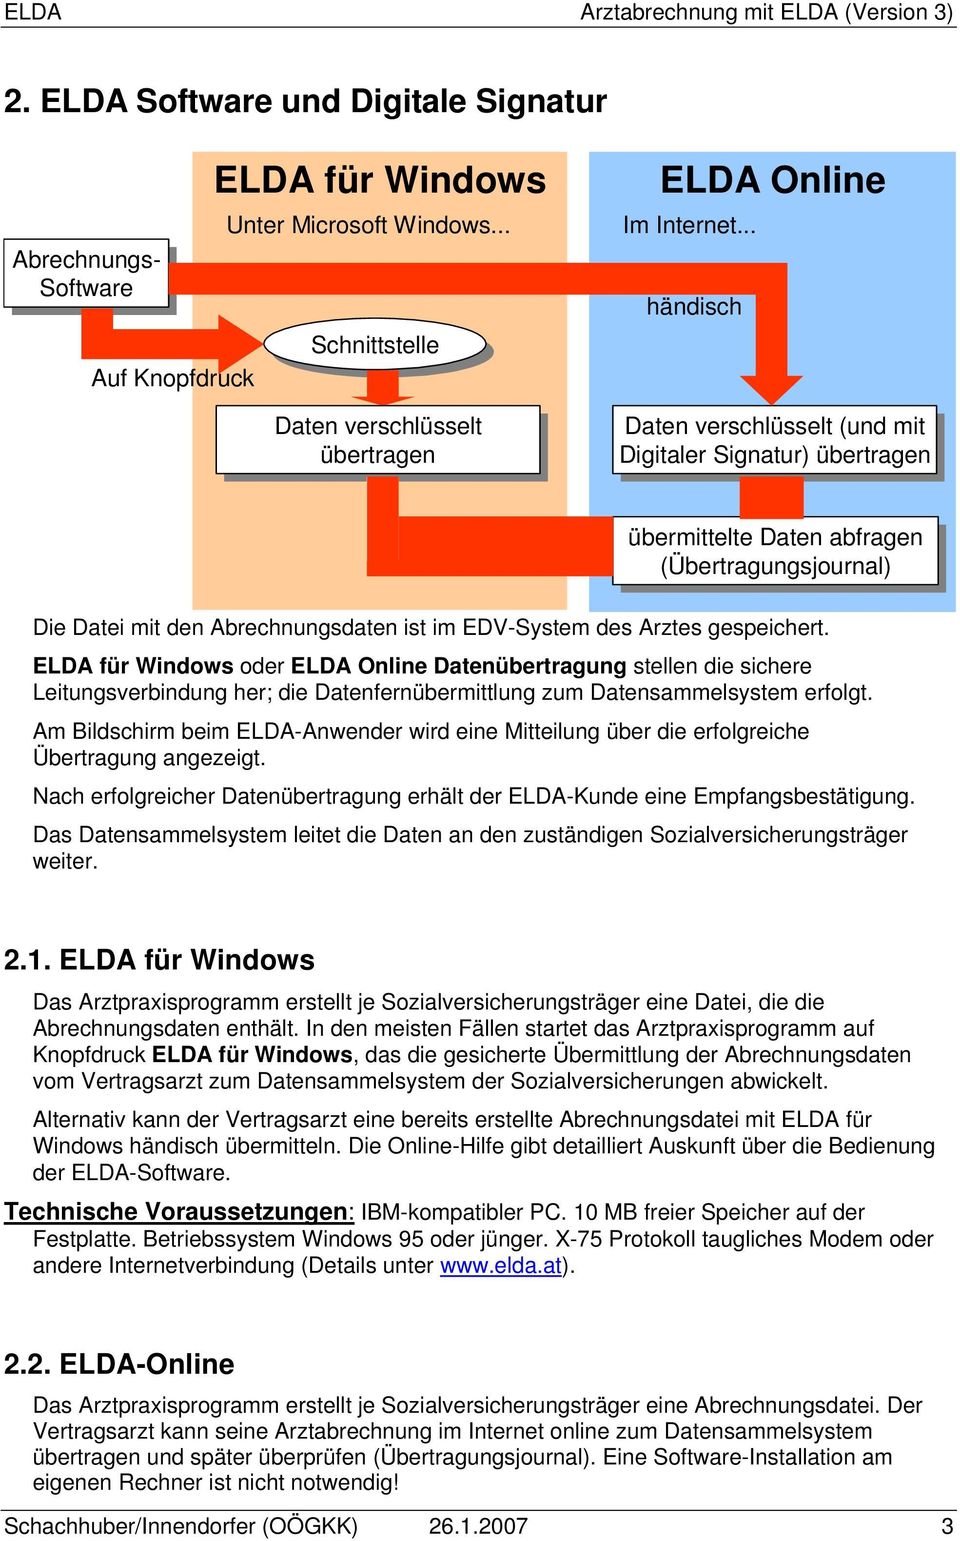 Arztes gespeichert. ELDA für Windows oder ELDA Online Datenübertragung stellen die sichere Leitungsverbindung her; die Datenfernübermittlung zum Datensammelsystem erfolgt.